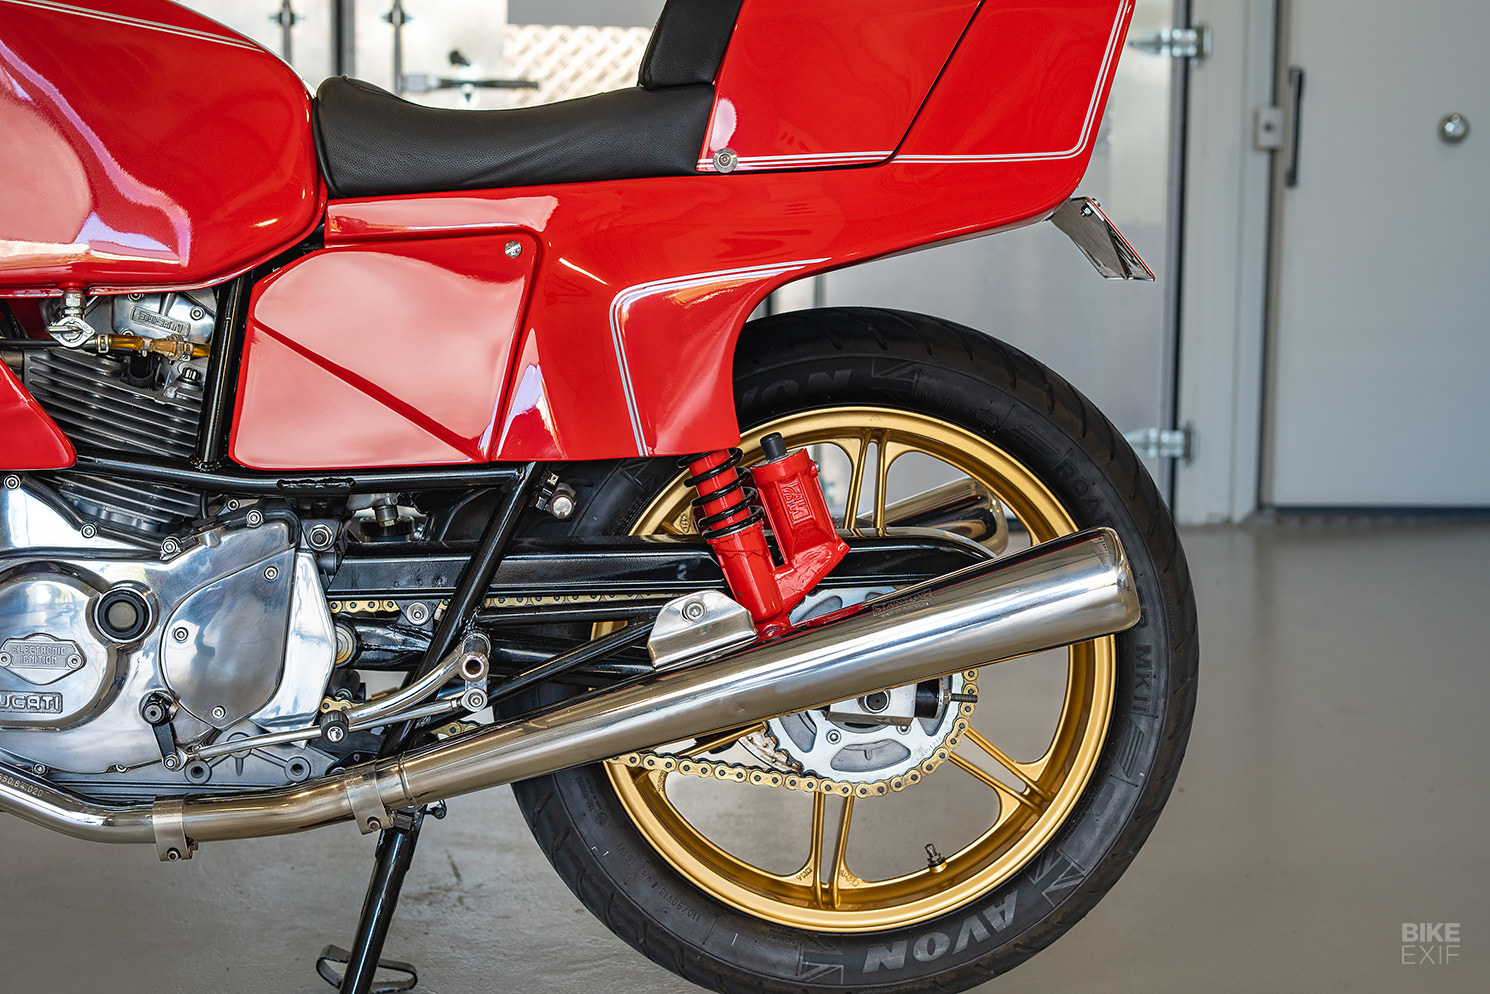 Ducati Pantah restomod by Purpose Built Moto